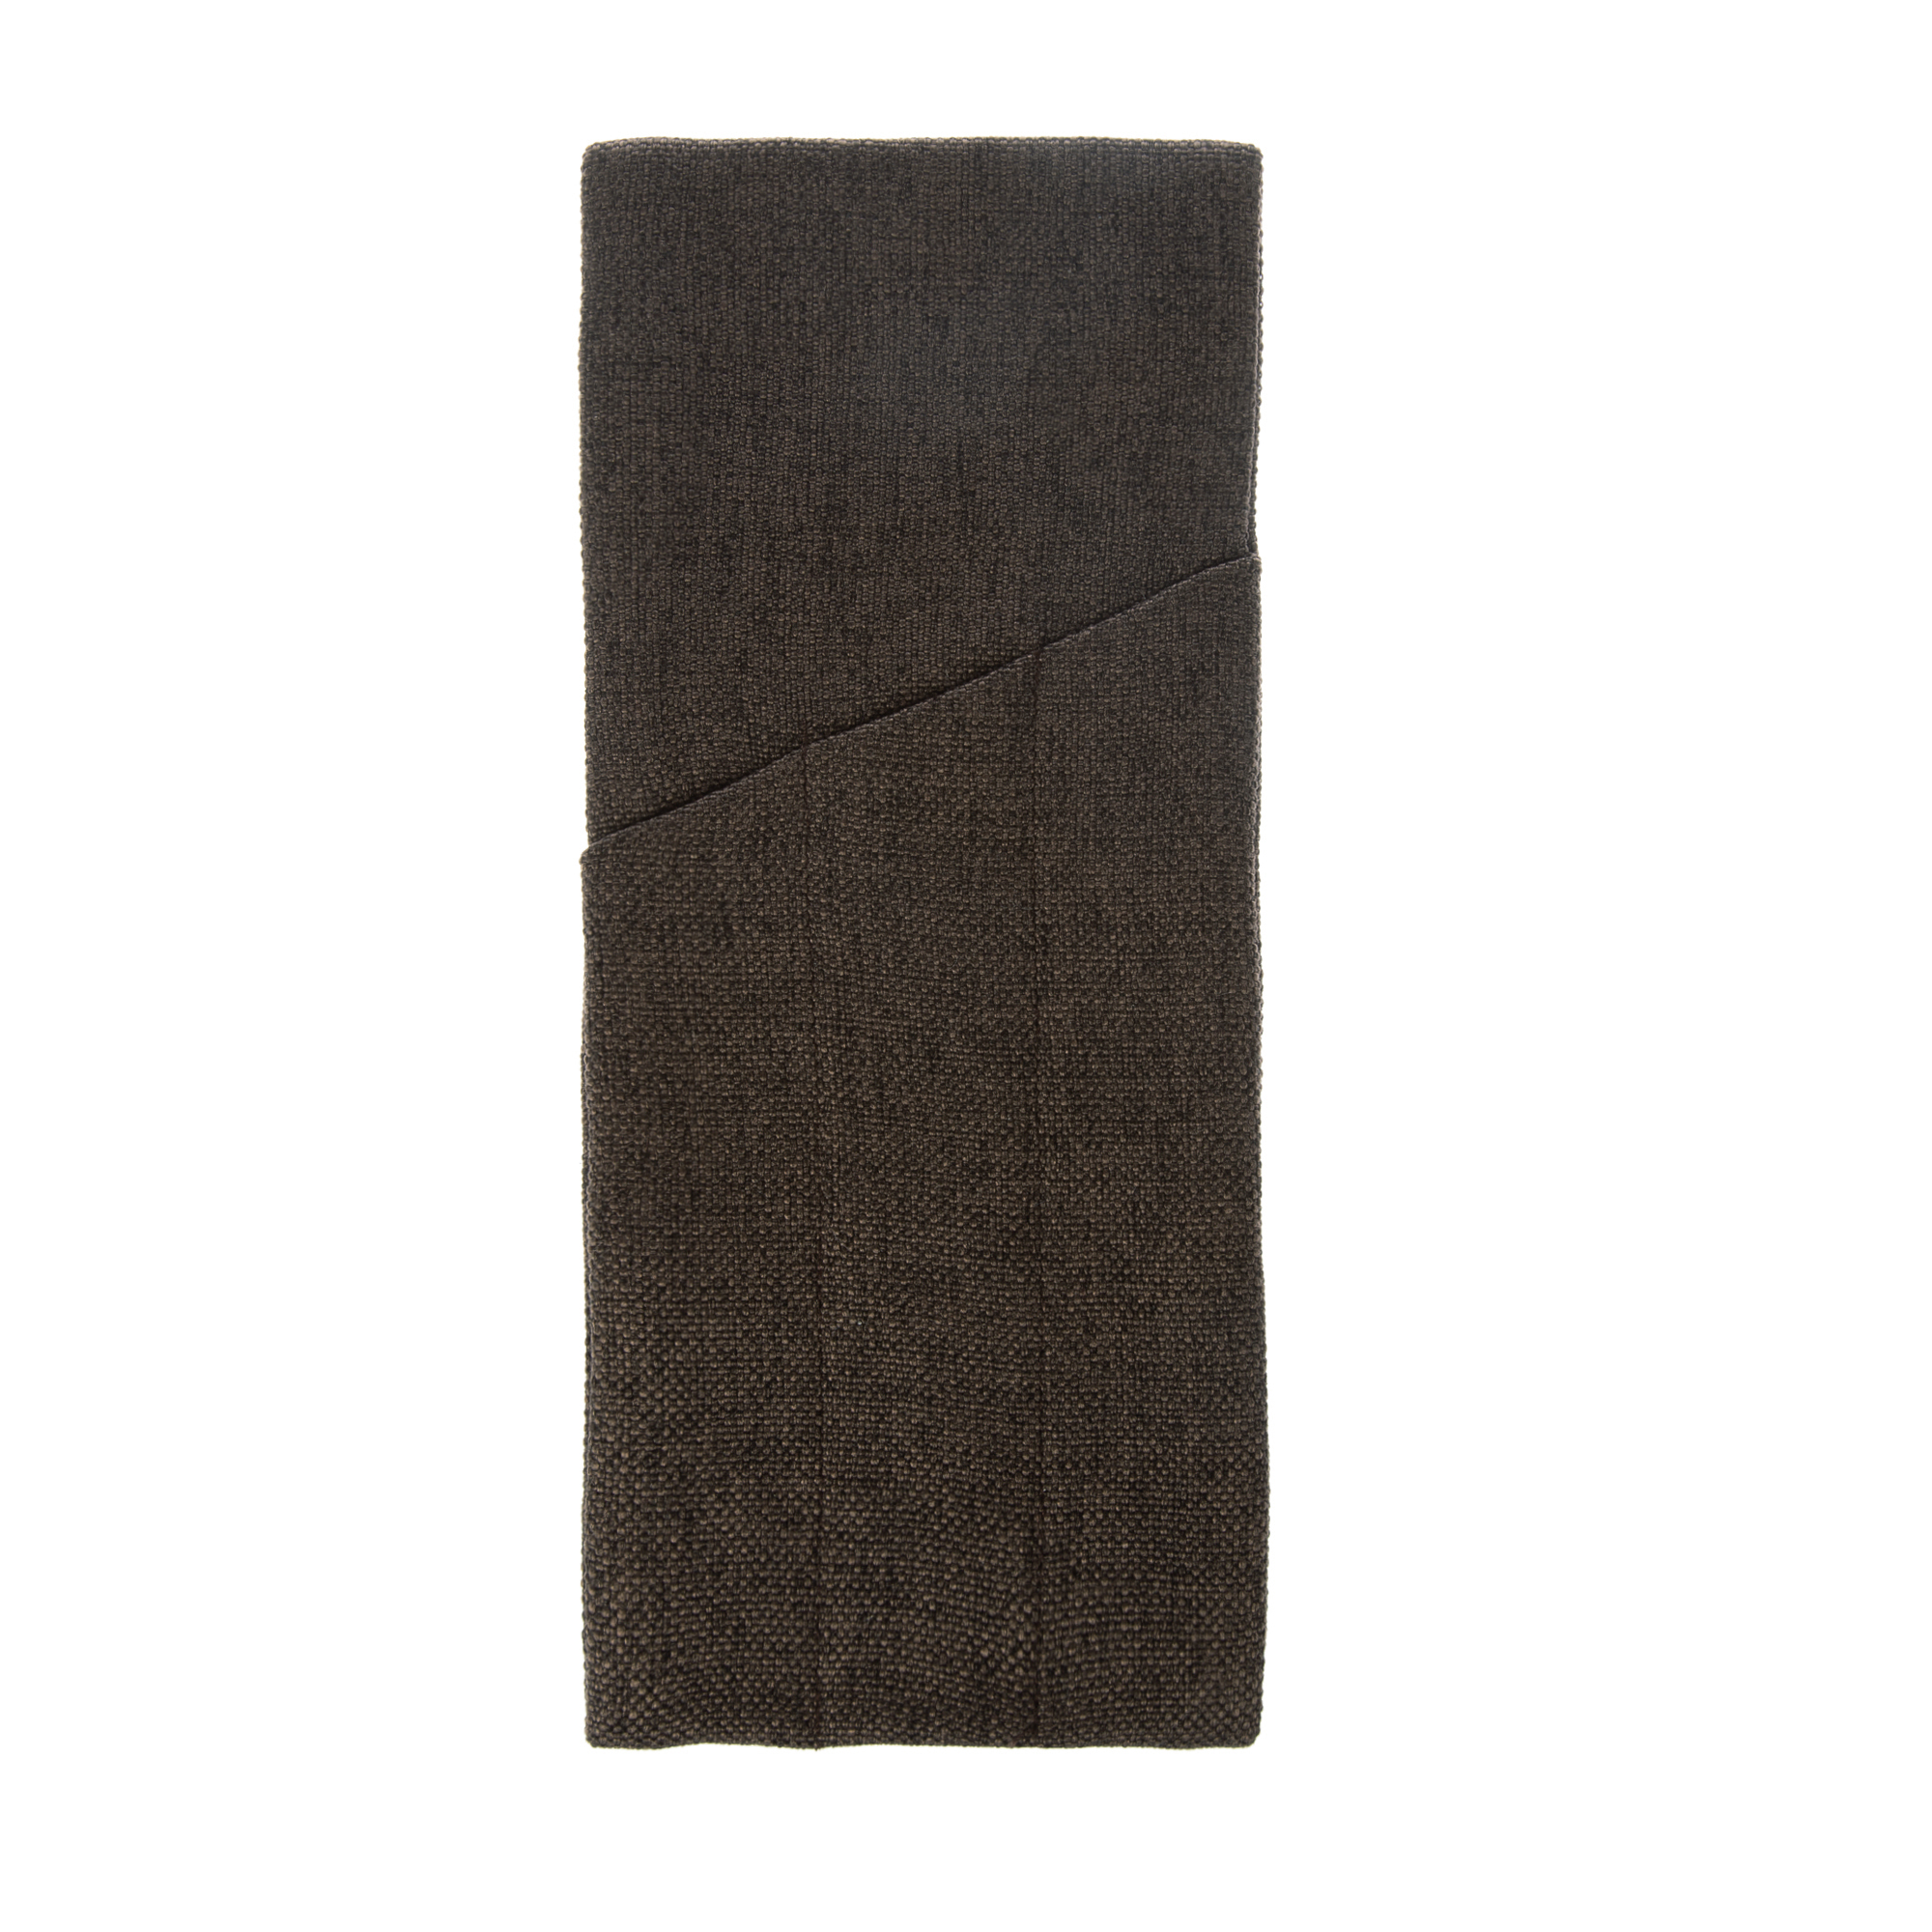 Куверт рогожка коричневый-темный на 3 столовых прибора правый цвет 55